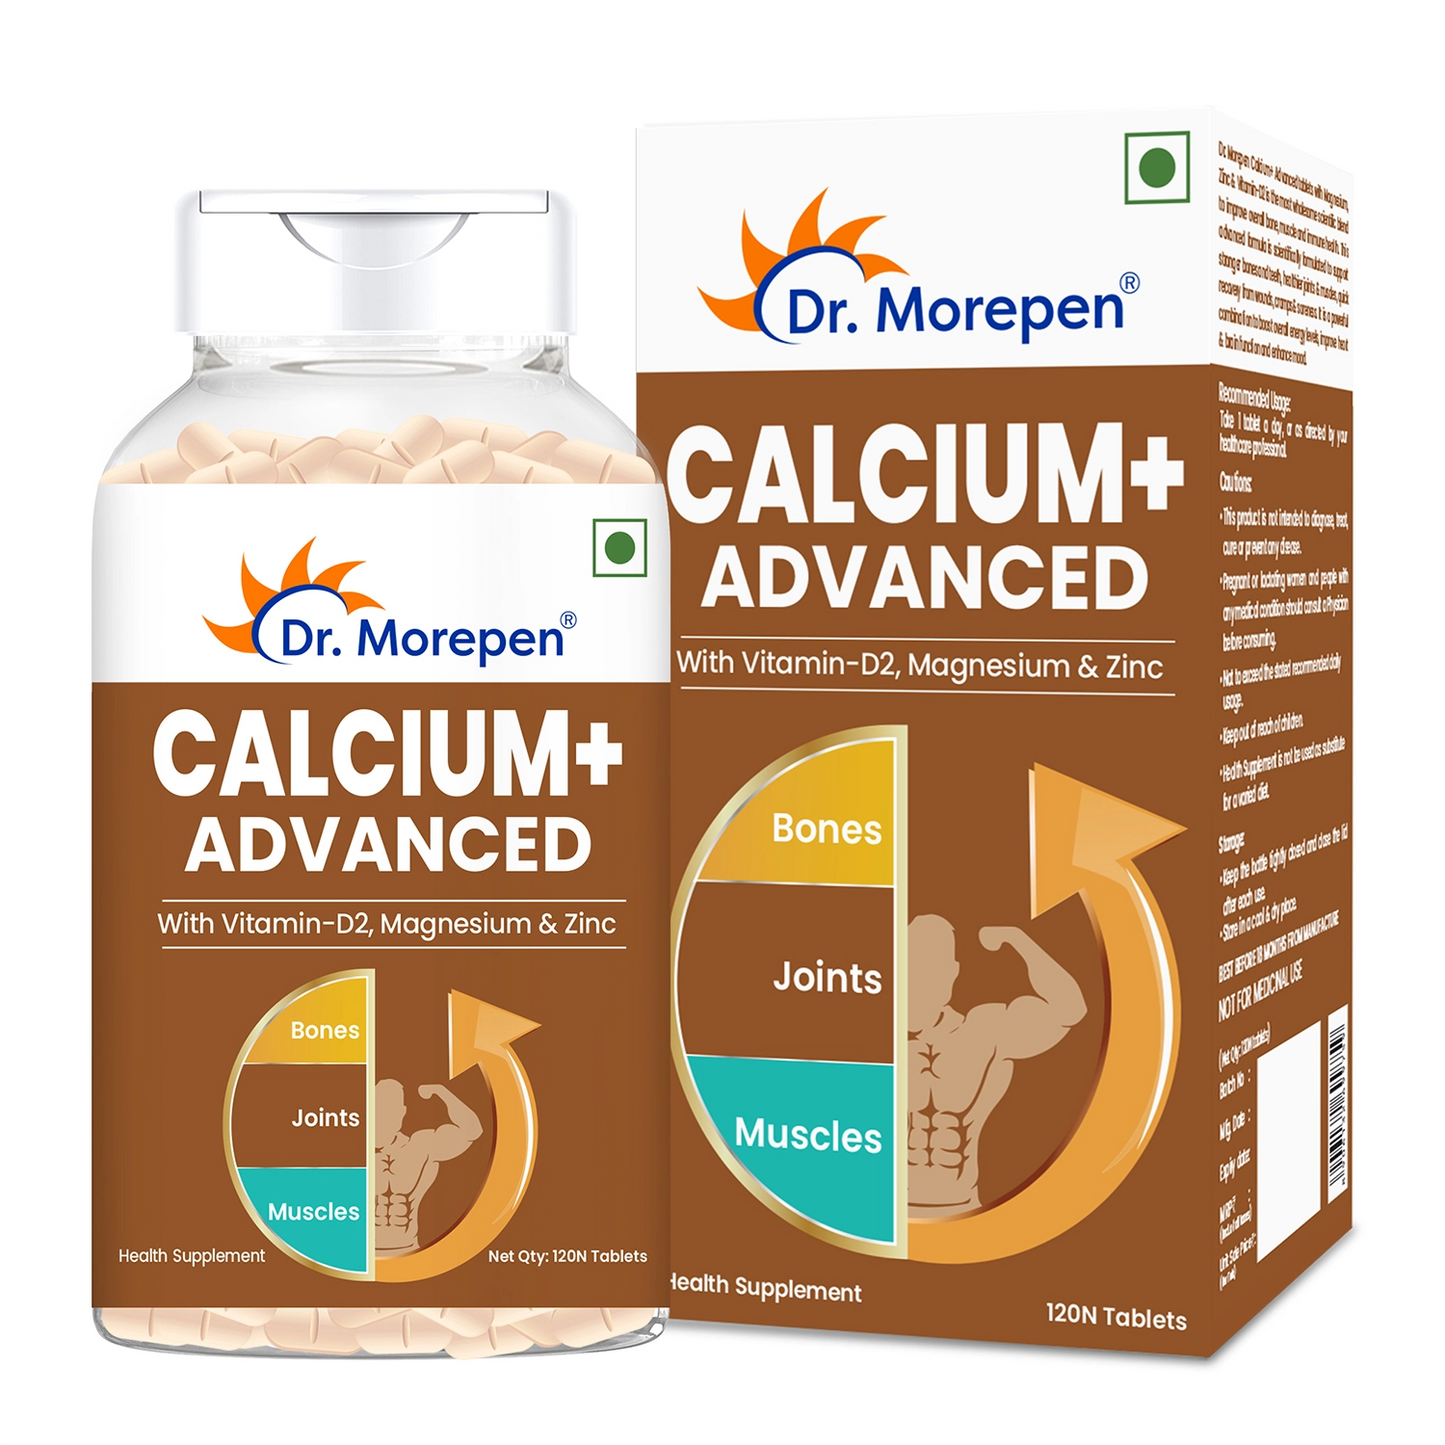 Calcium+ Advanced